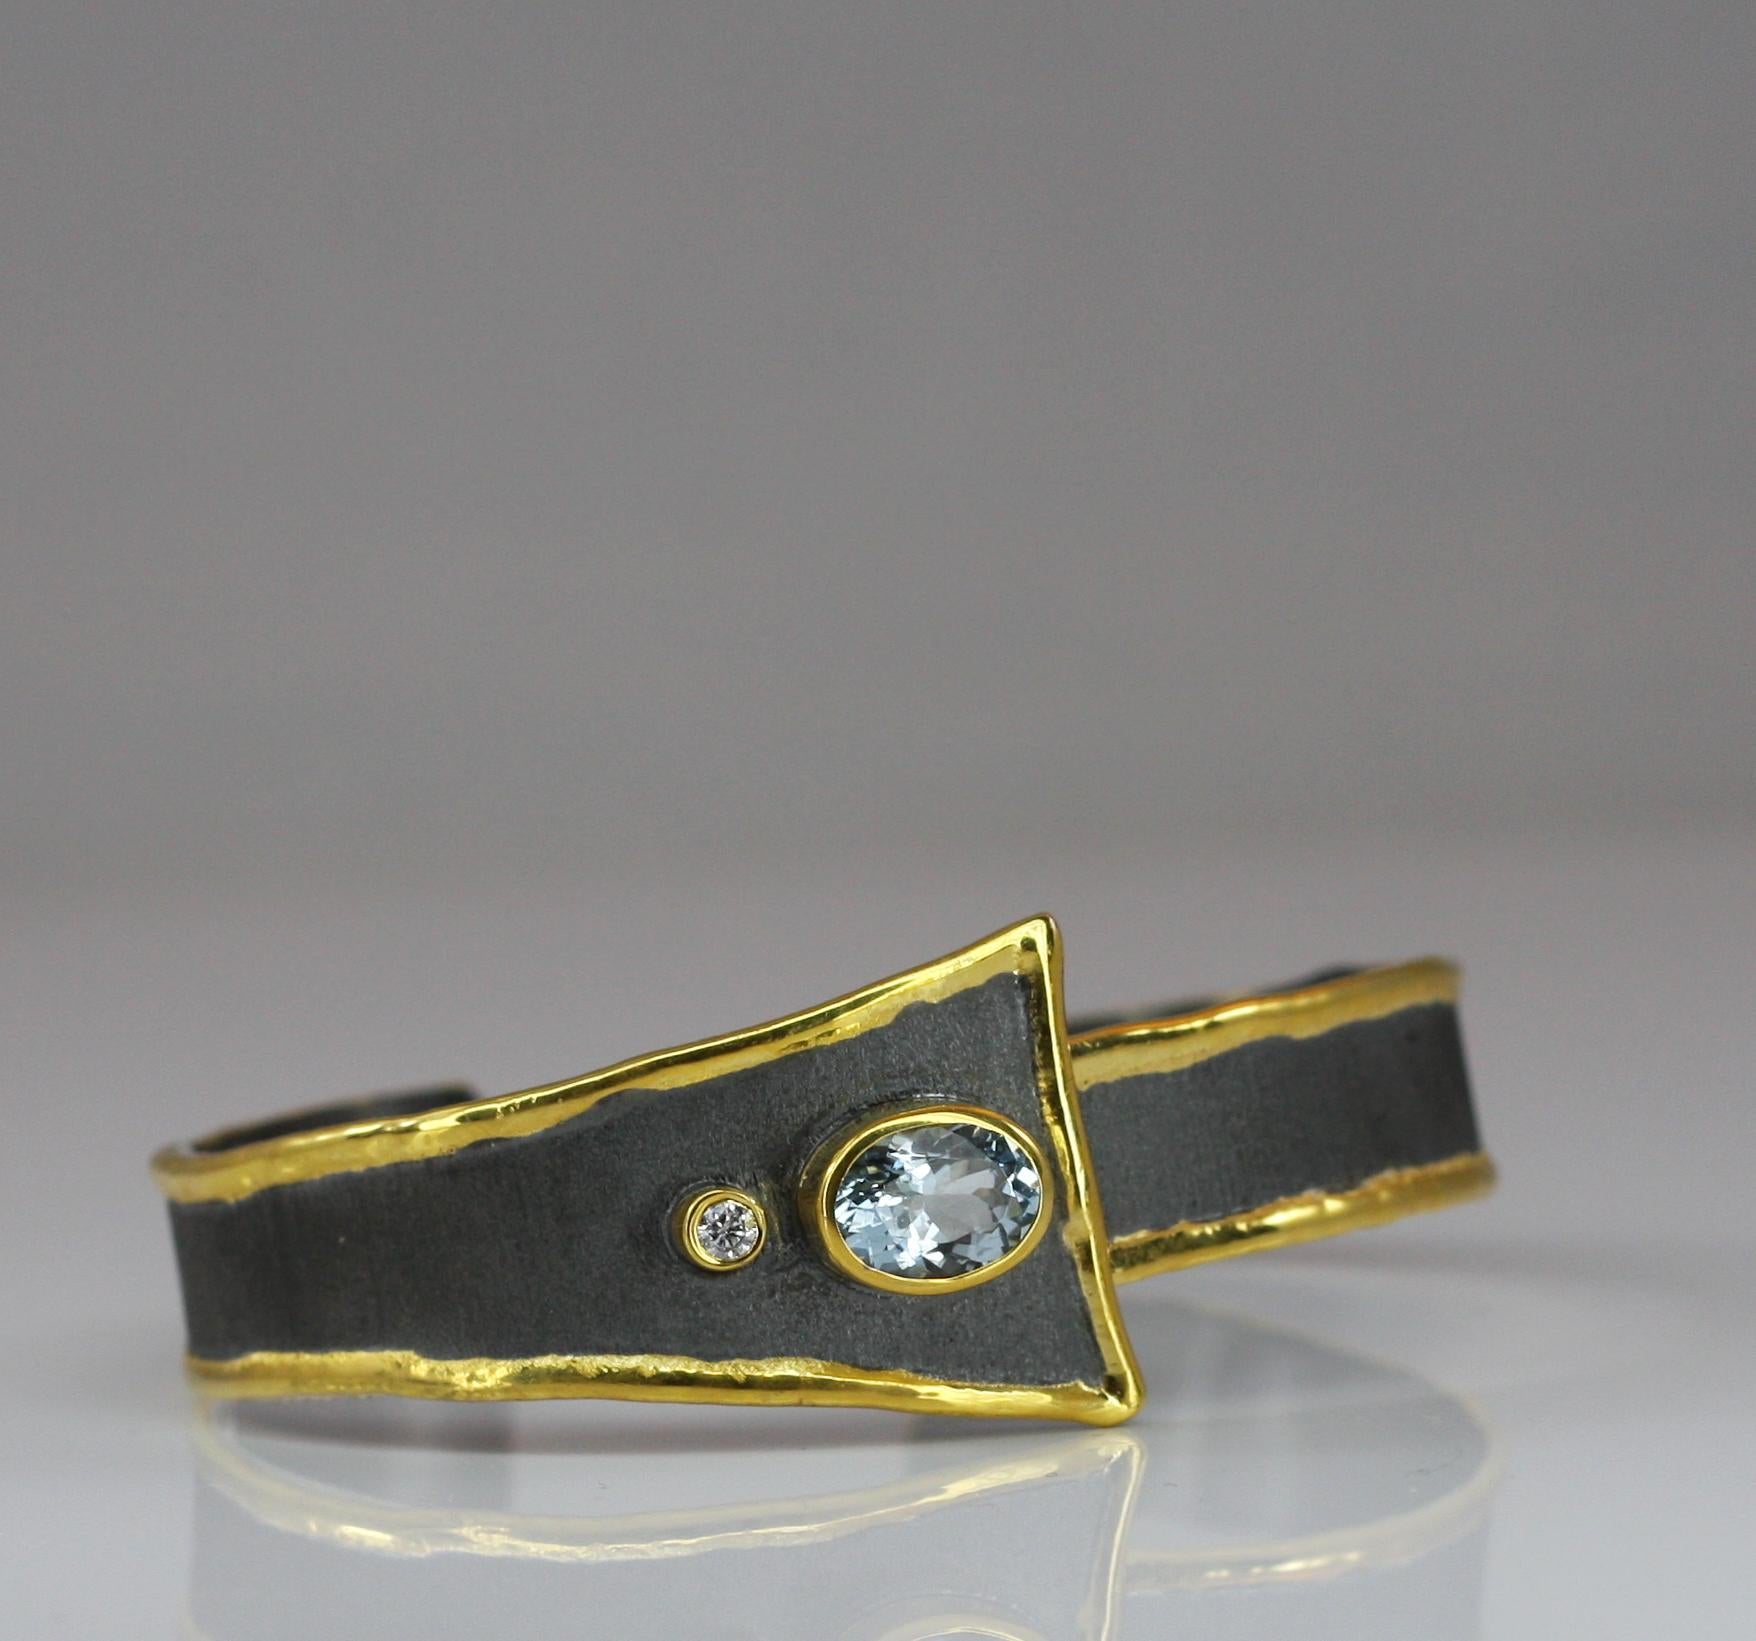 Yianni Creations präsentiert ein geometrisches Manschettenarmband aus der Eclyps Kollektion. Es ist ein 100% handgefertigtes, handwerkliches Schmuckstück aus feinem 950er Silber, das mit schwarzem Rhodium überzogen ist, was ihm ein atemberaubendes